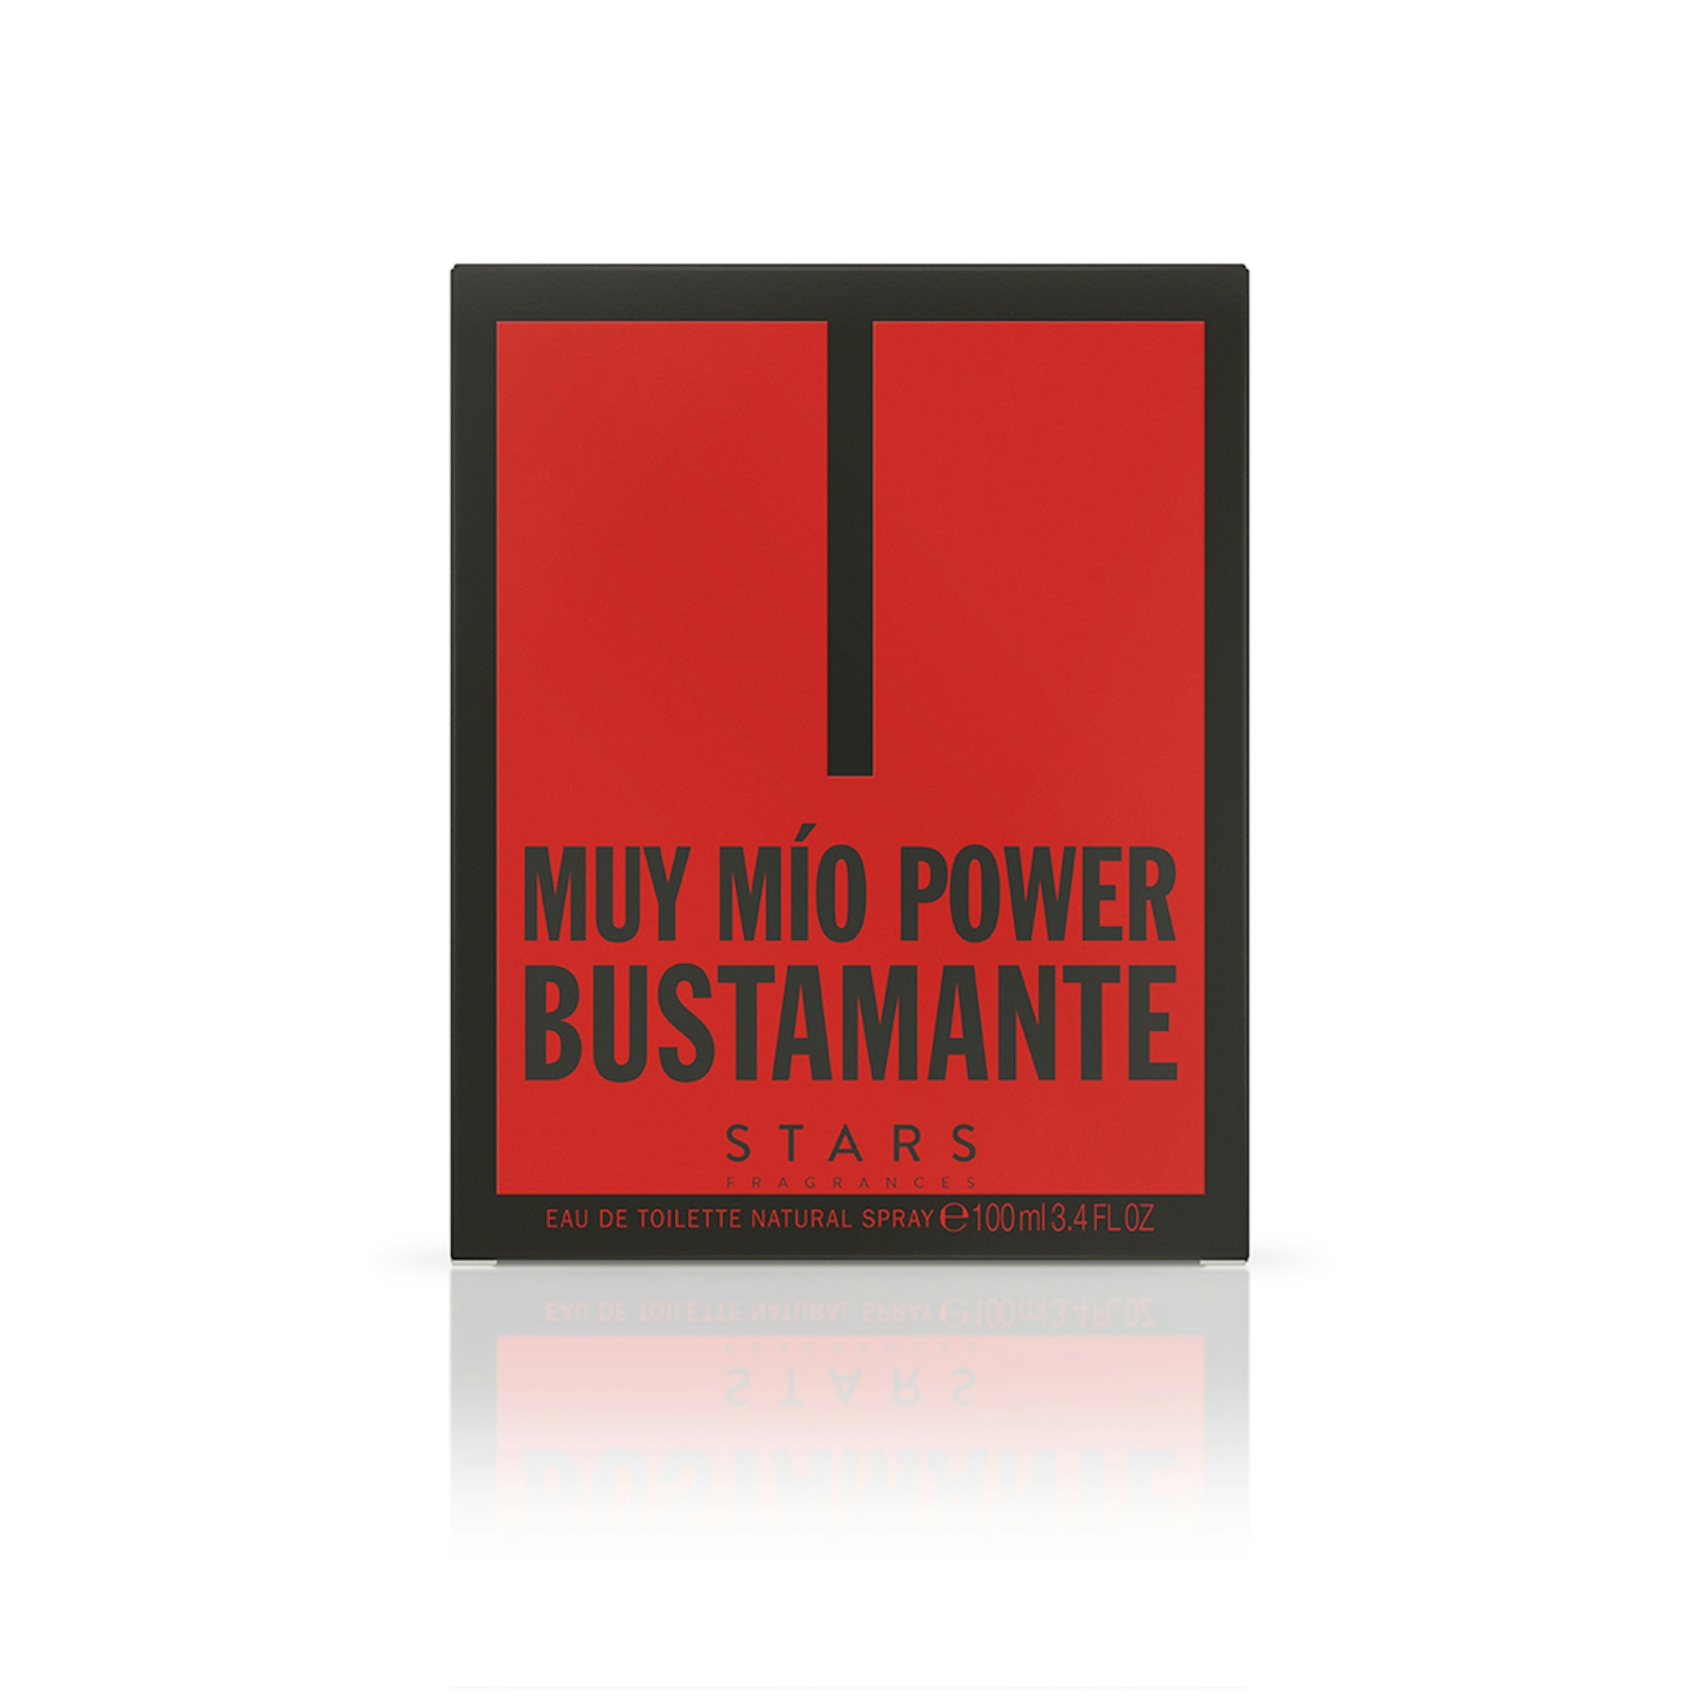 Colonia Power Muy Mio Bustamante 100Ml